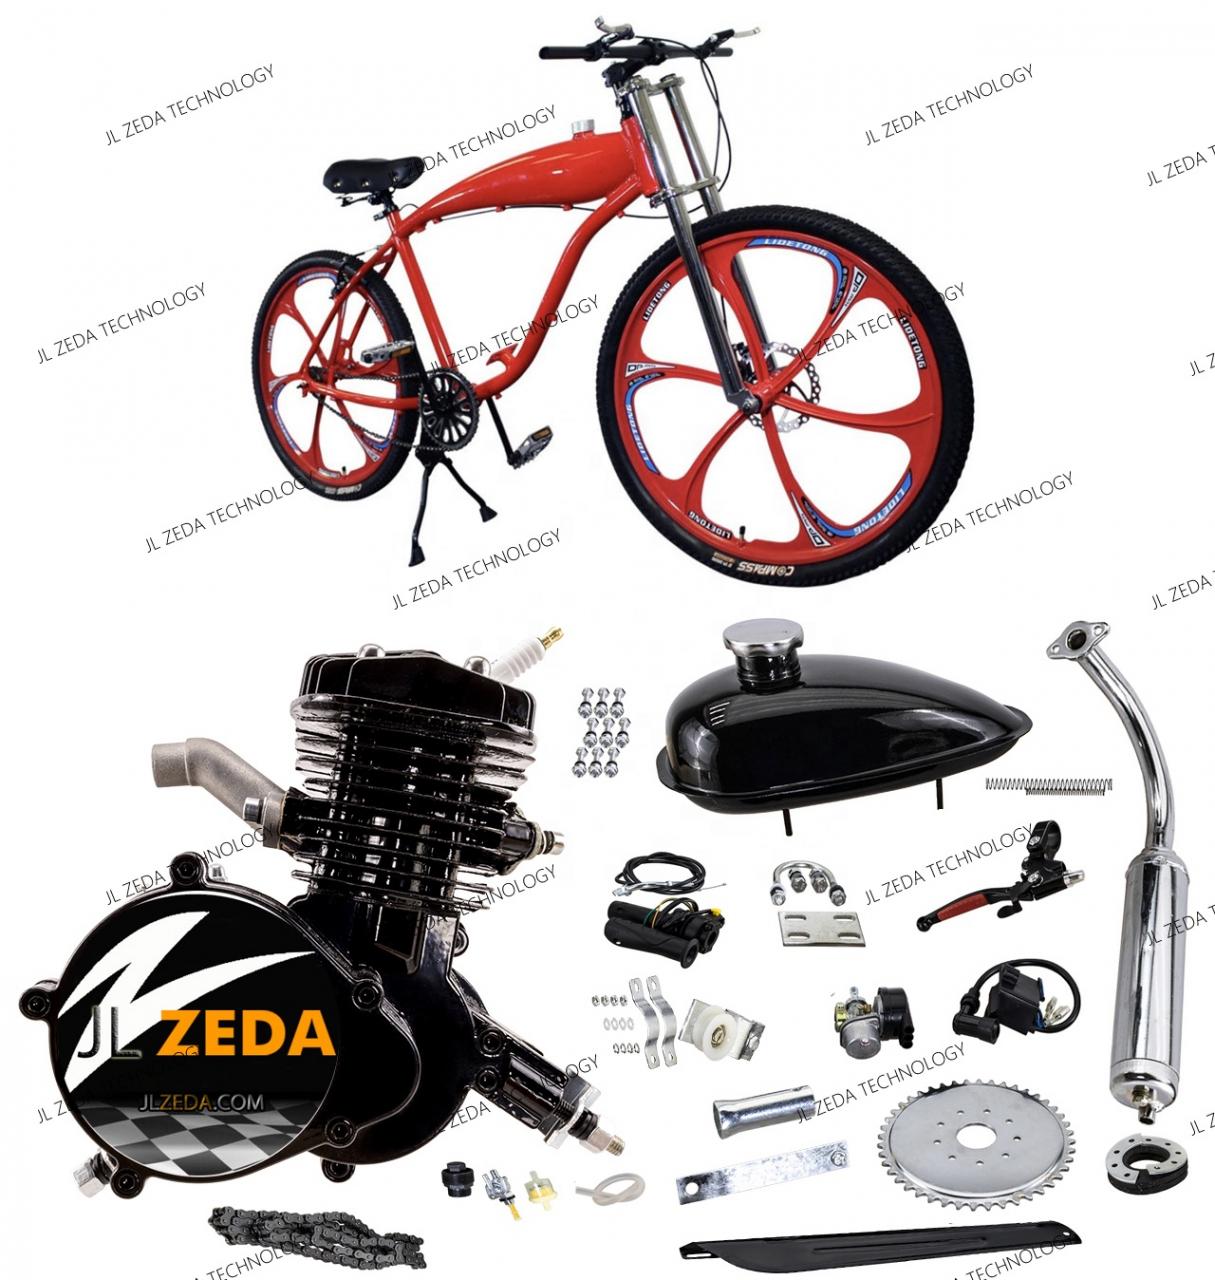 Zeda Kit Motor Bicicleta 80cc Motorized Bicycle Engine Set - Buy Bicycle  Engine Kit,Kit Motor Bicicleta,Bicycle Engine Kit Product on Alibaba.com